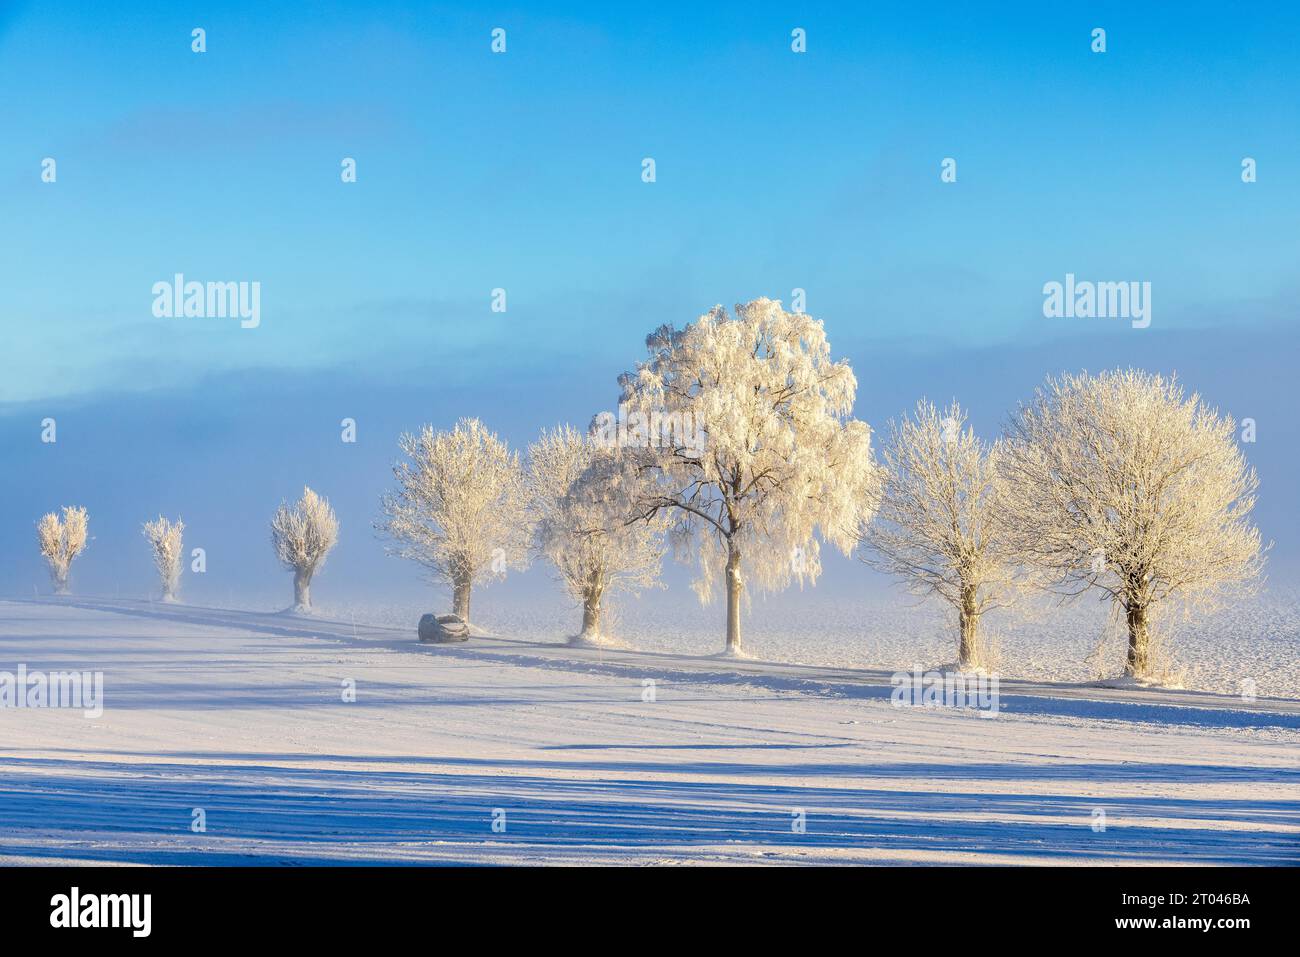 Auto fährt auf einer Landstraße in einer winterlichen Landschaft mit frostigen Bäumen Stockfoto